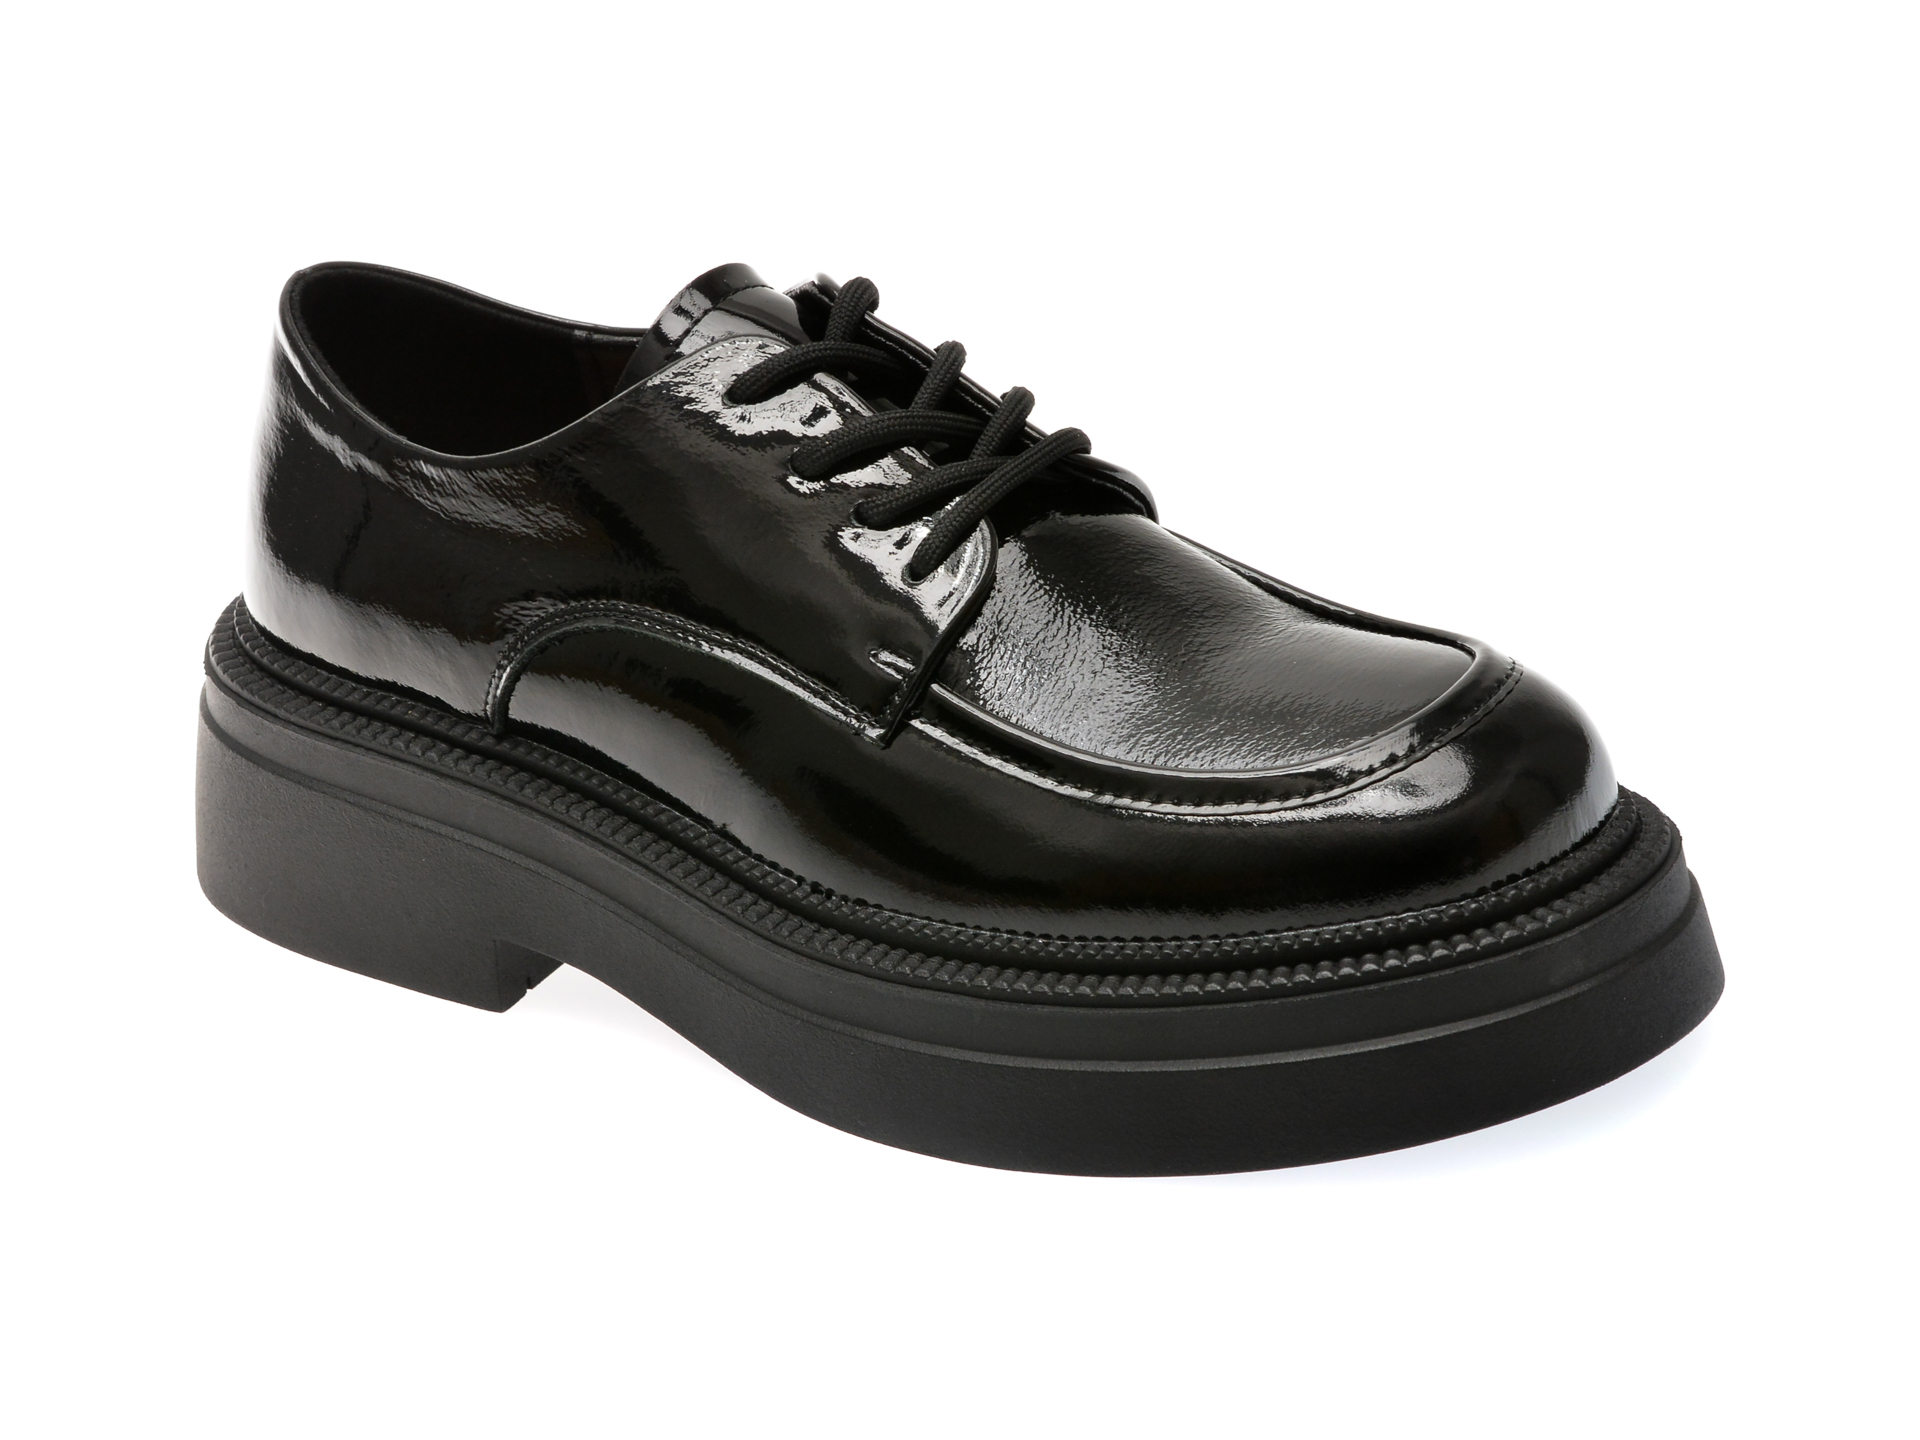 Pantofi casual FLAVIA PASSINI negri, 170307, din piele naturala lacuita